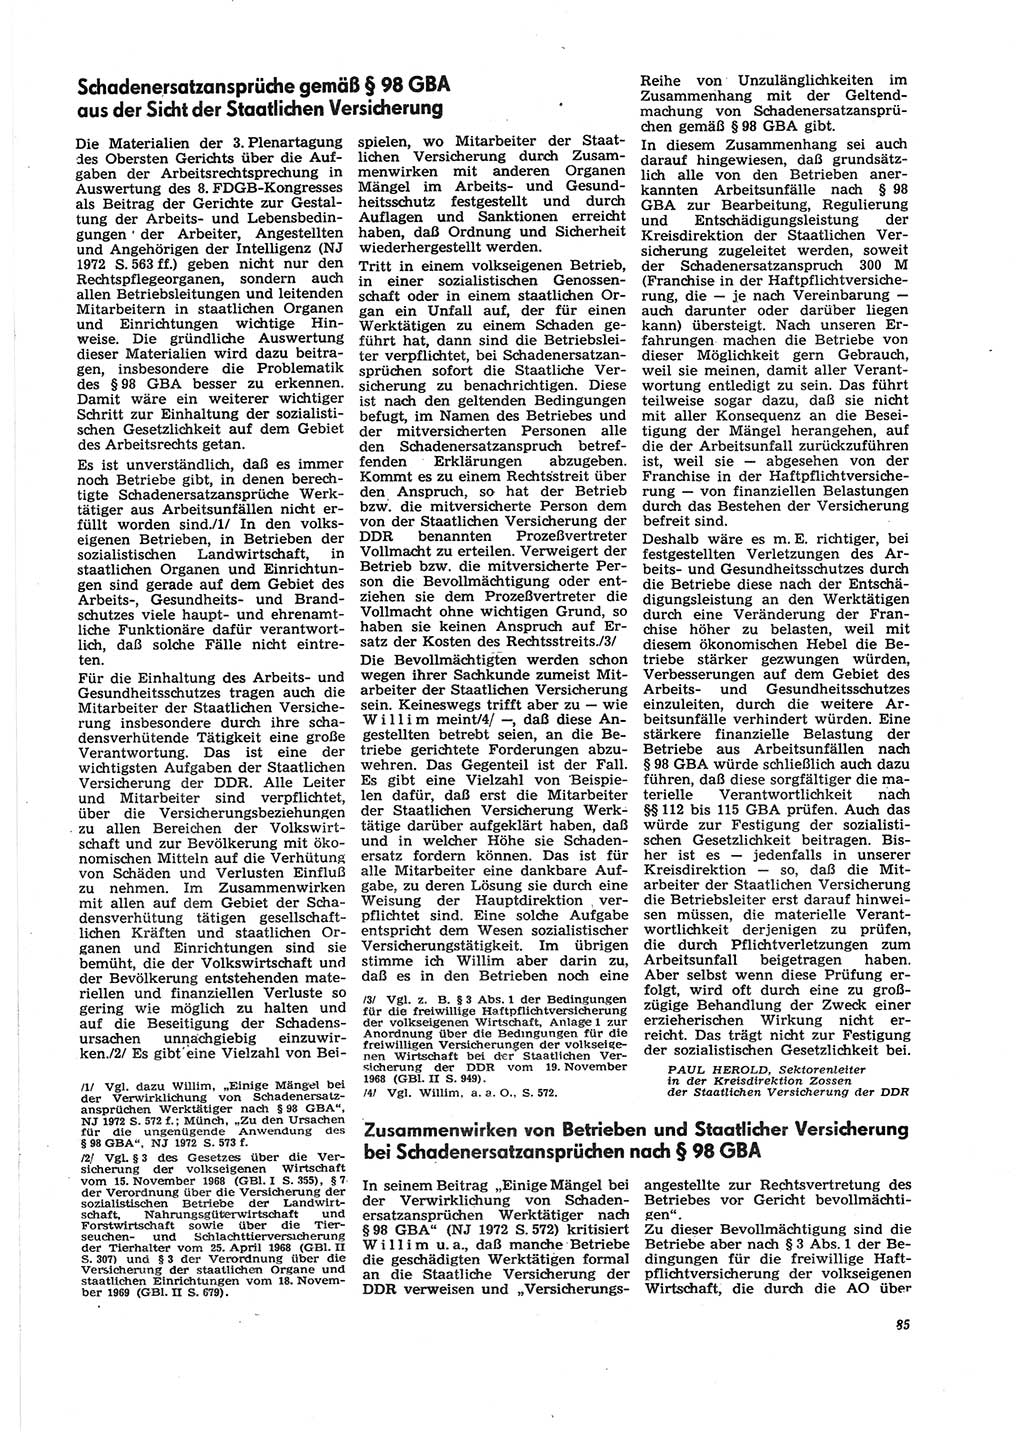 Neue Justiz (NJ), Zeitschrift für Recht und Rechtswissenschaft [Deutsche Demokratische Republik (DDR)], 27. Jahrgang 1973, Seite 85 (NJ DDR 1973, S. 85)